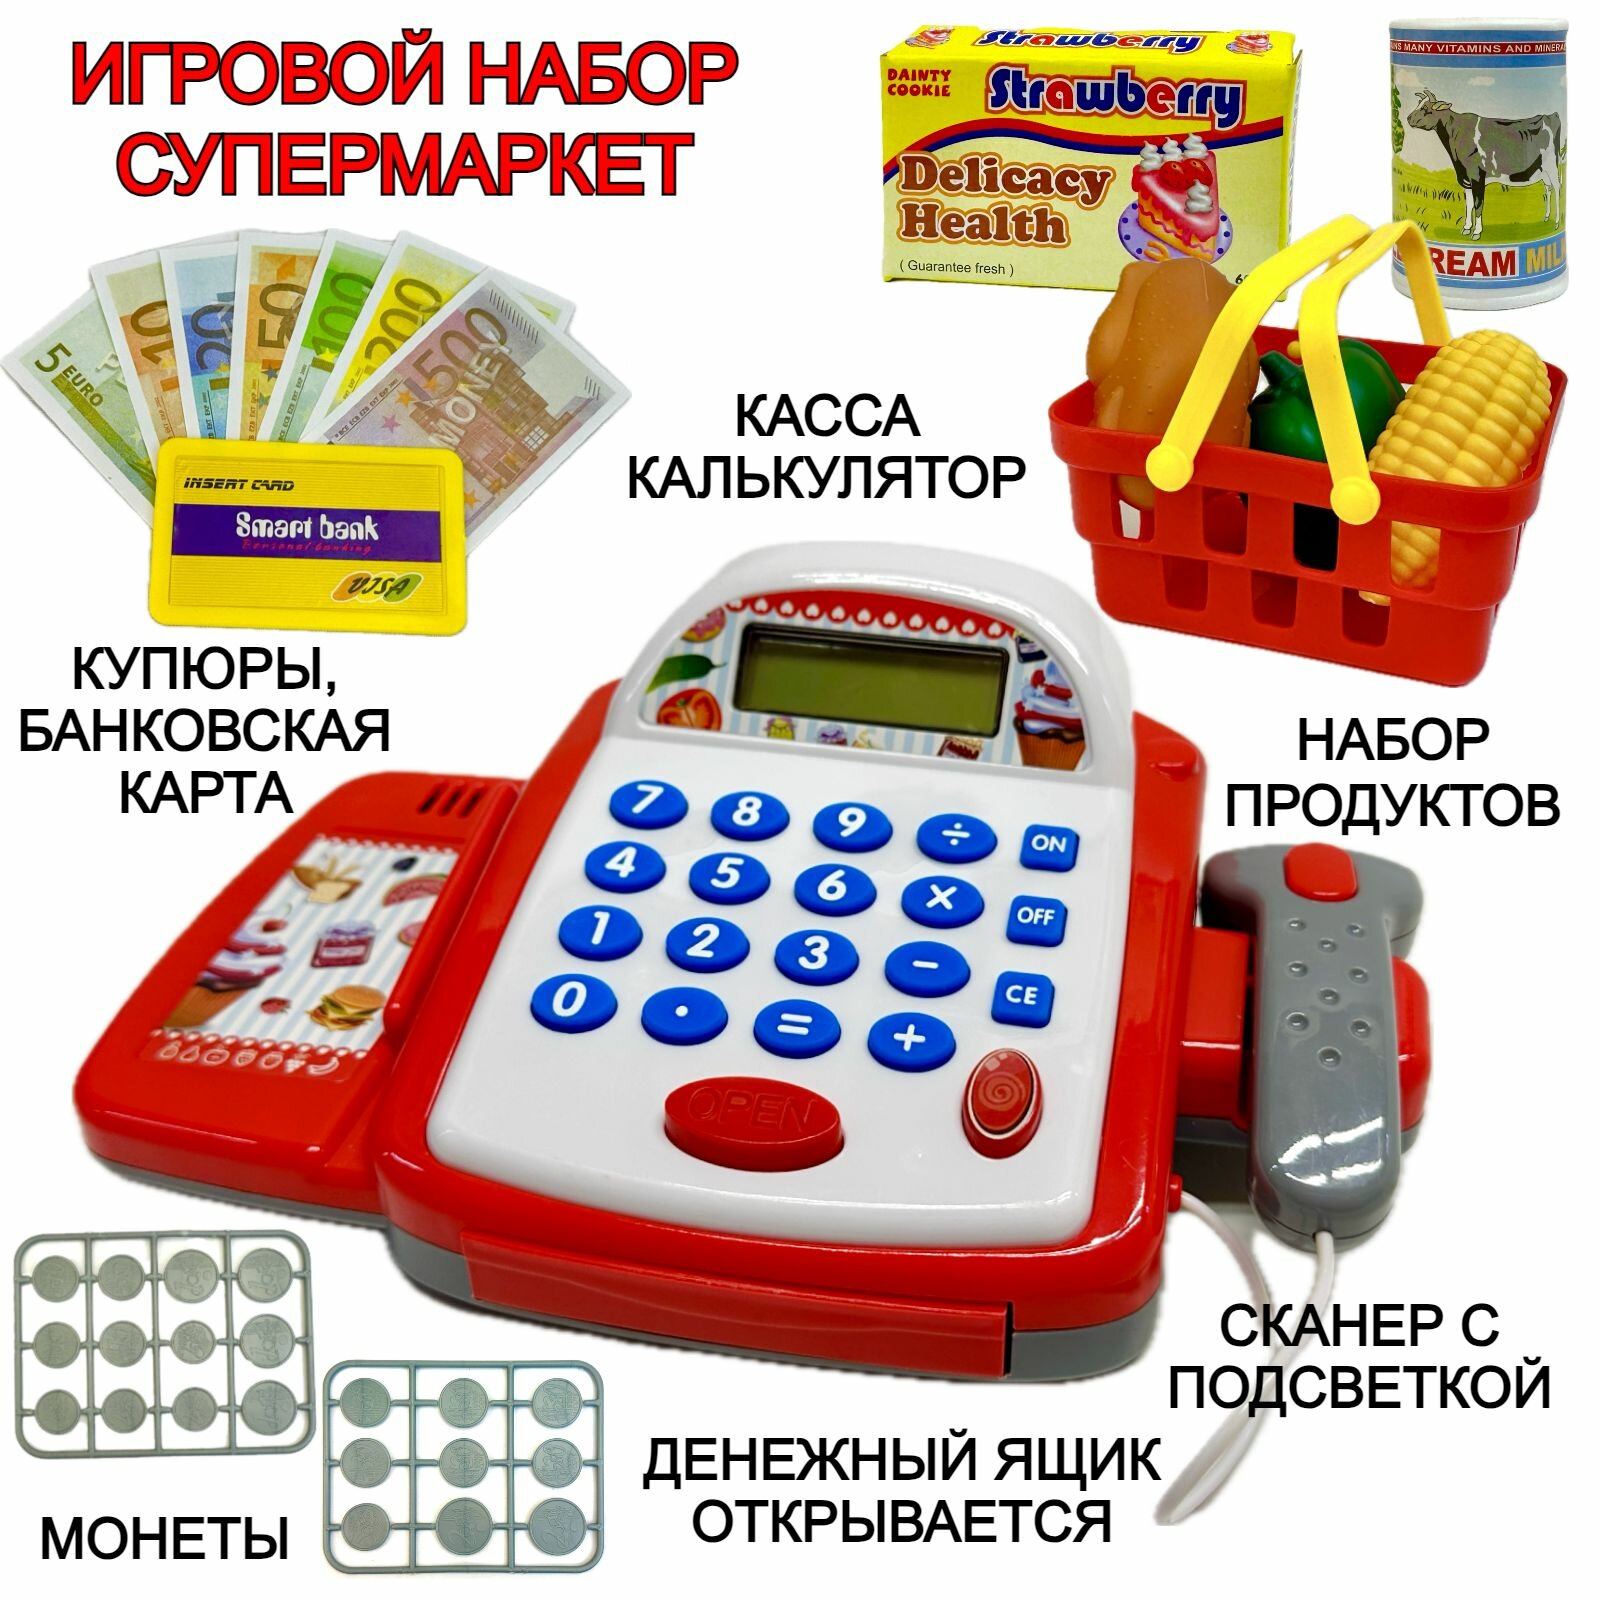 Игровой набор "Кассовый аппарат со сканером", корзинка с продуктами, монеты, купюры, пластиковые карты, открывается денежный ящик, калькулятор, звуки 6300A, 24х14,5х10 см